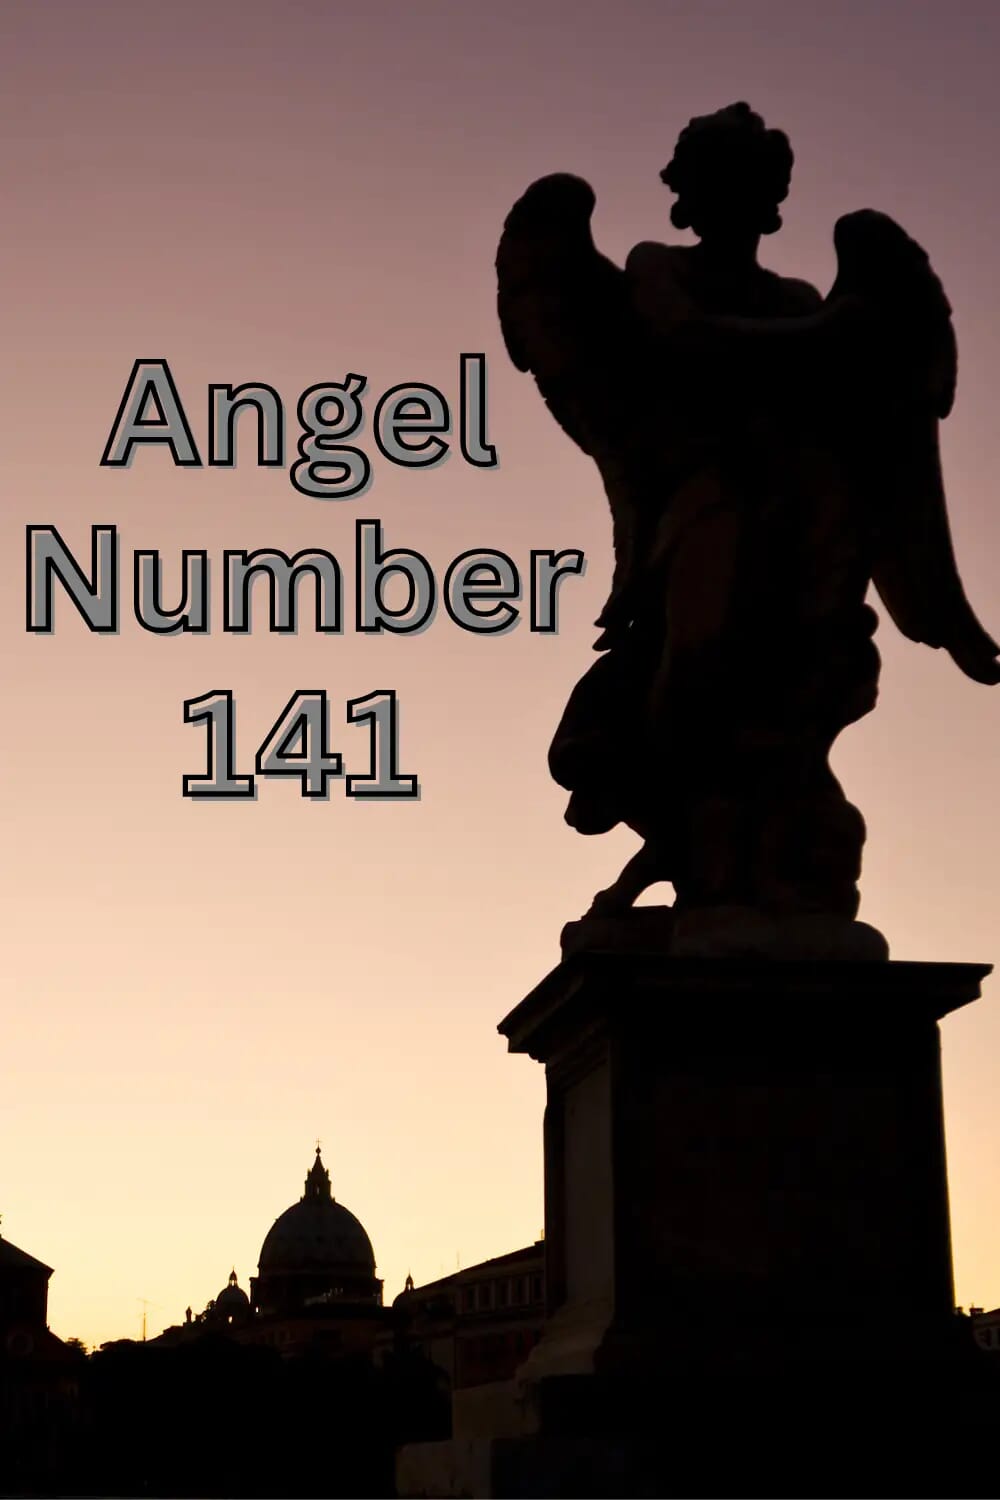 Angel Number 141